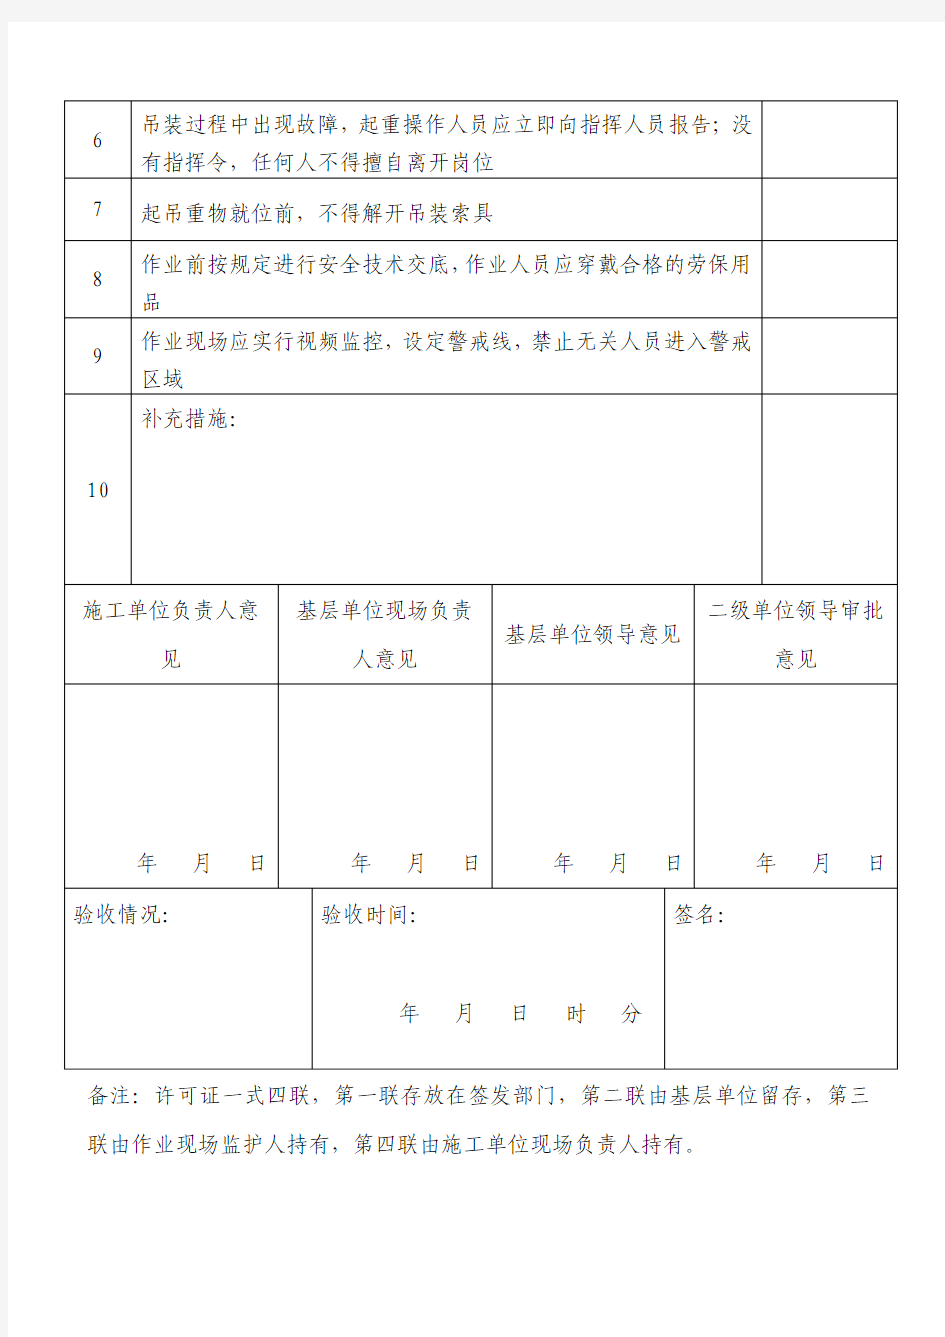 中国石化起重作业许可证2016版